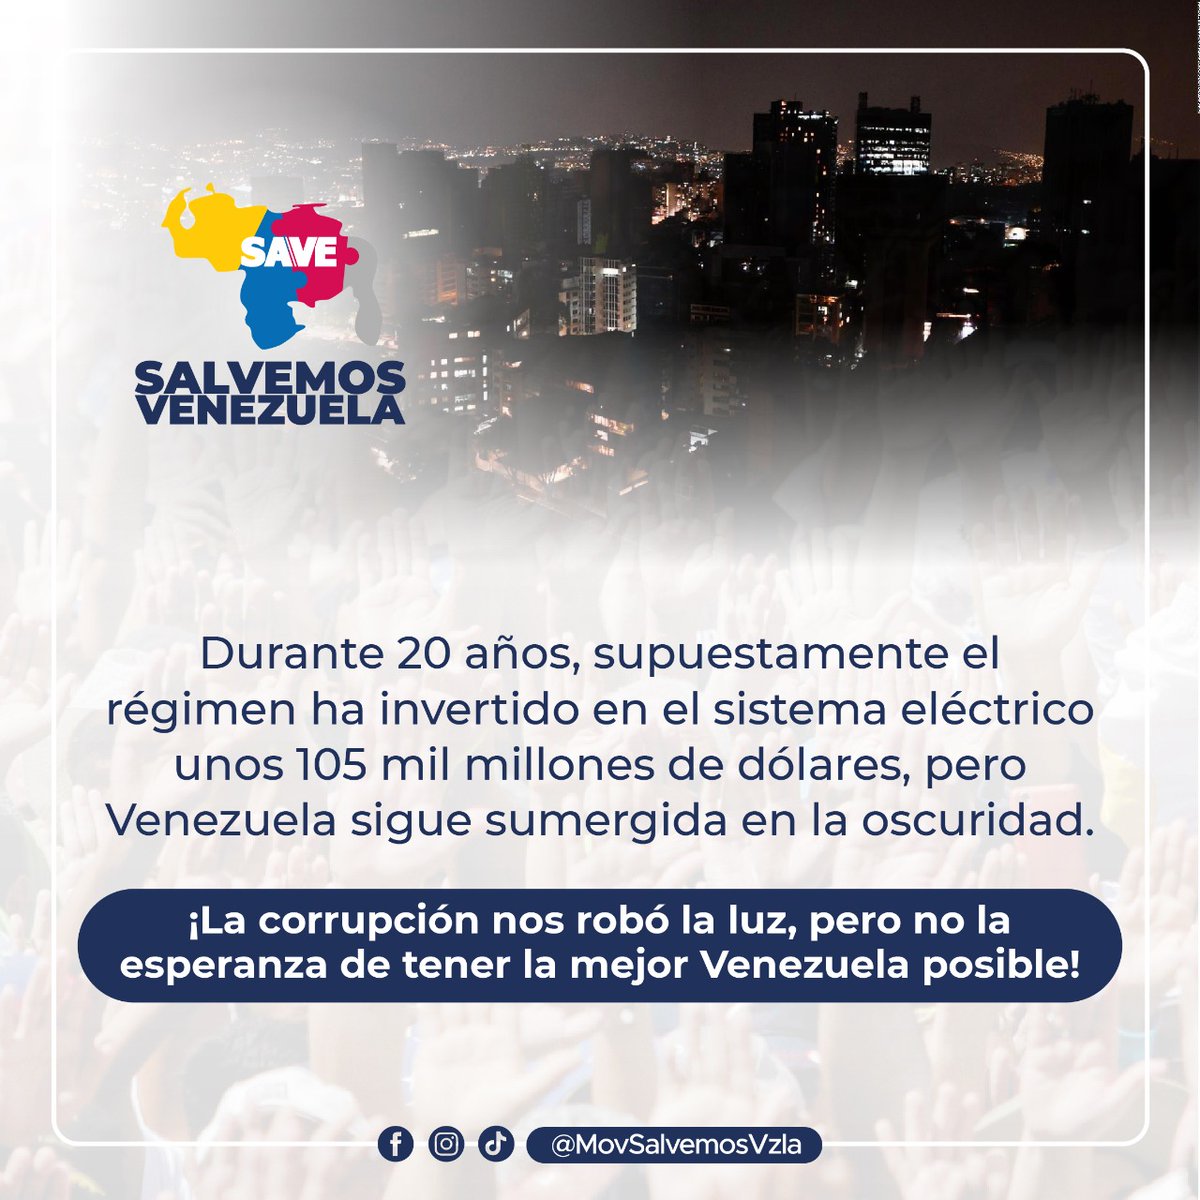 Todos estamos llamados a salvar a Venezuela del caos y de la oscuridad. 
Tenemos el talento de todos los venezolanos de bien y las ganas para recuperar nuestro país. ¡Unidos, organizados y movilizados #SalvemosVzla !
#MaduroEsOscuridad
#ÚneteAlCambioDemocrático